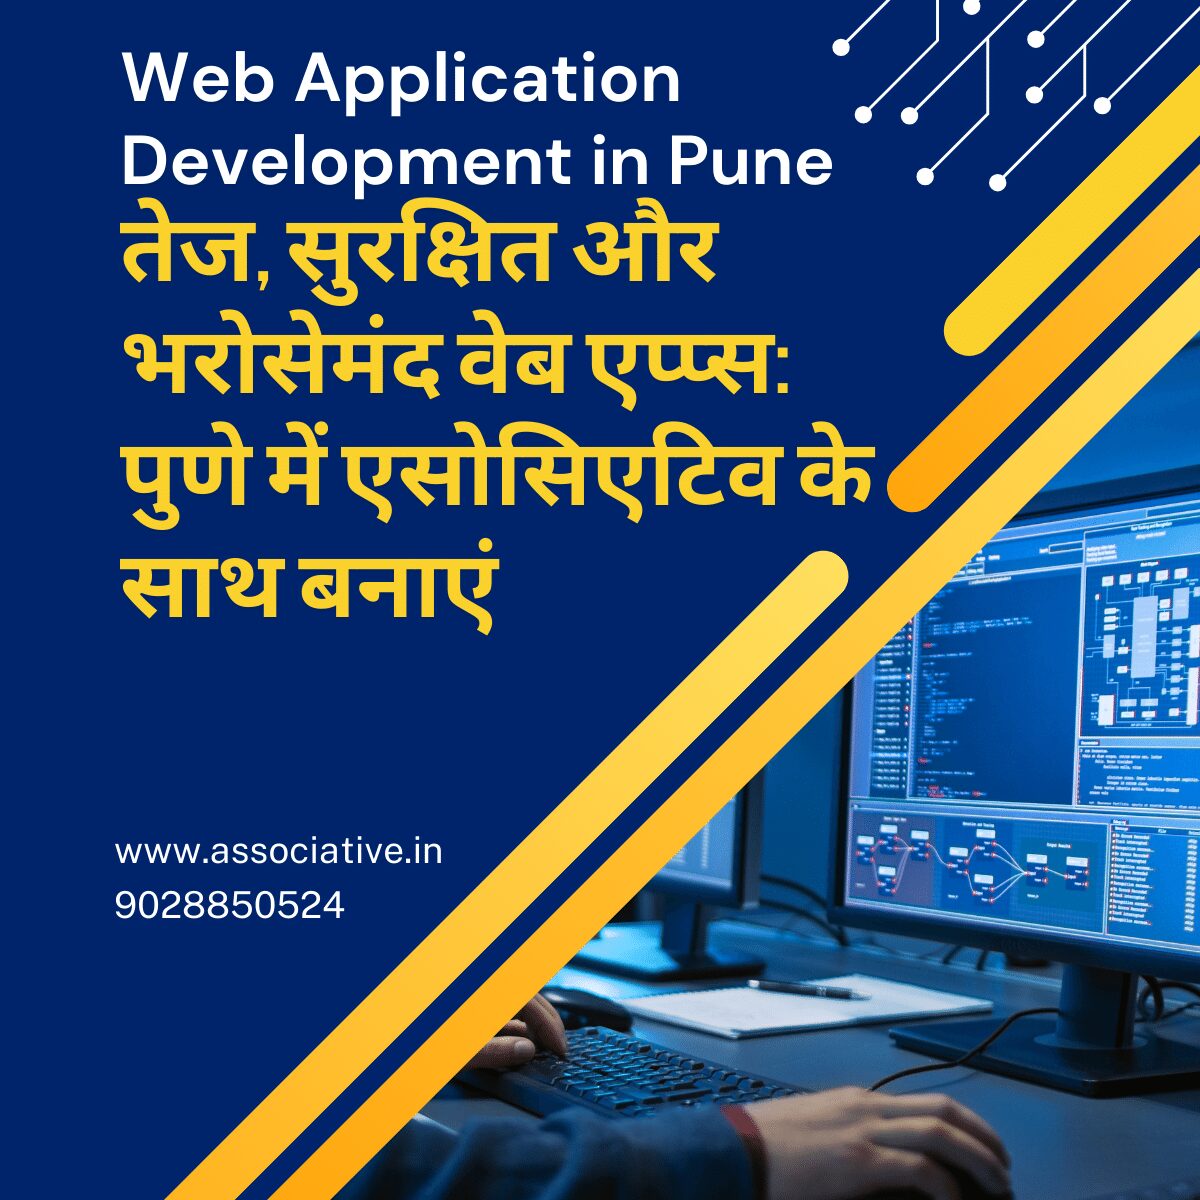 Web Application Development in Pune तेज, सुरक्षित और भरोसेमंद वेब एप्प्स: पुणे में एसोसिएटिव के साथ बनाएं